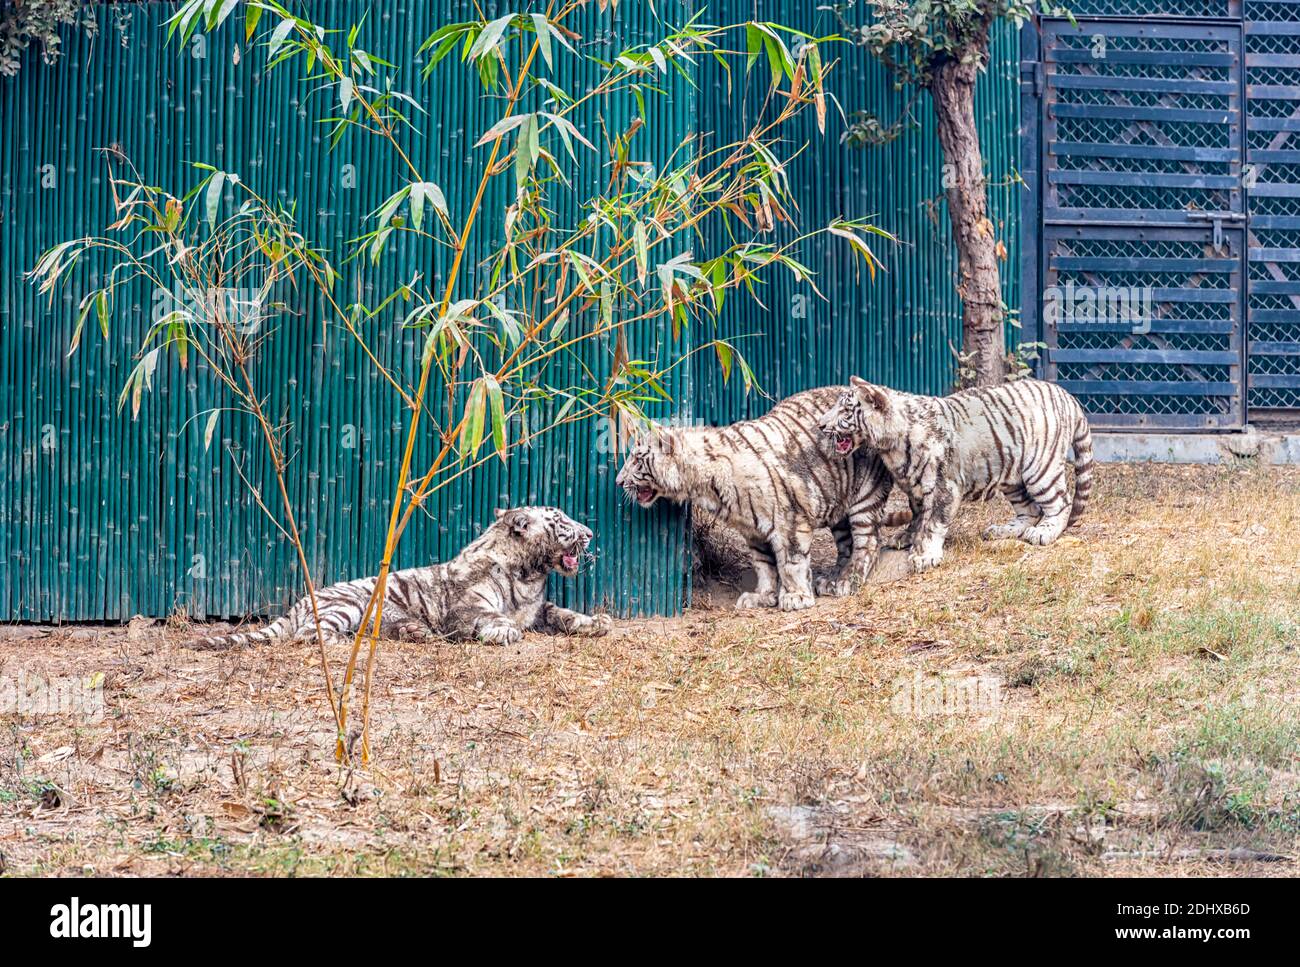 Cuccioli di tigre bianche, di umore giocoso, nel recinto della tigre al Parco Zoologico Nazionale di Delhi, conosciuto anche come lo Zoo di Delhi. Foto Stock